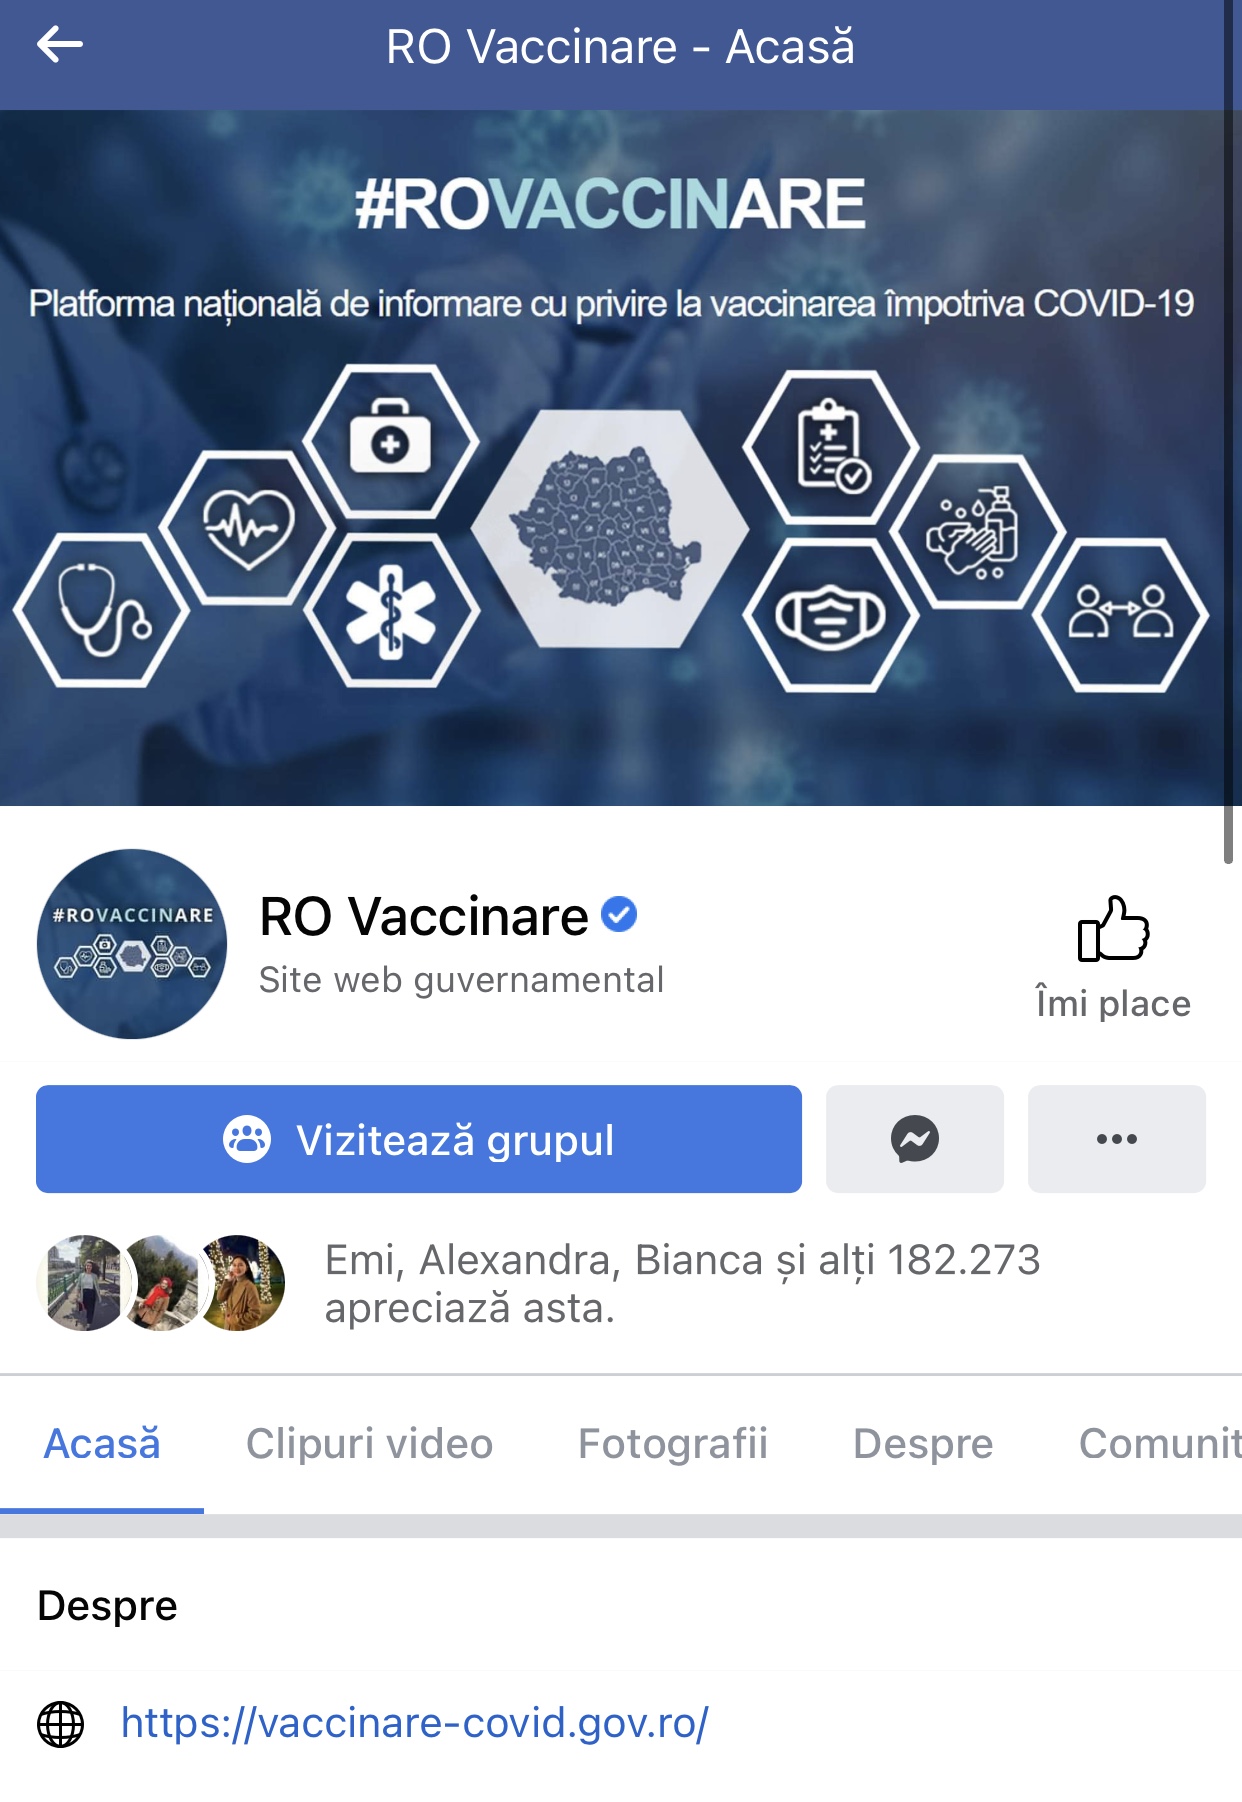 Pagină oficială a Platformei naționale de informare cu privire la vaccinarea împotriva coronavirusului